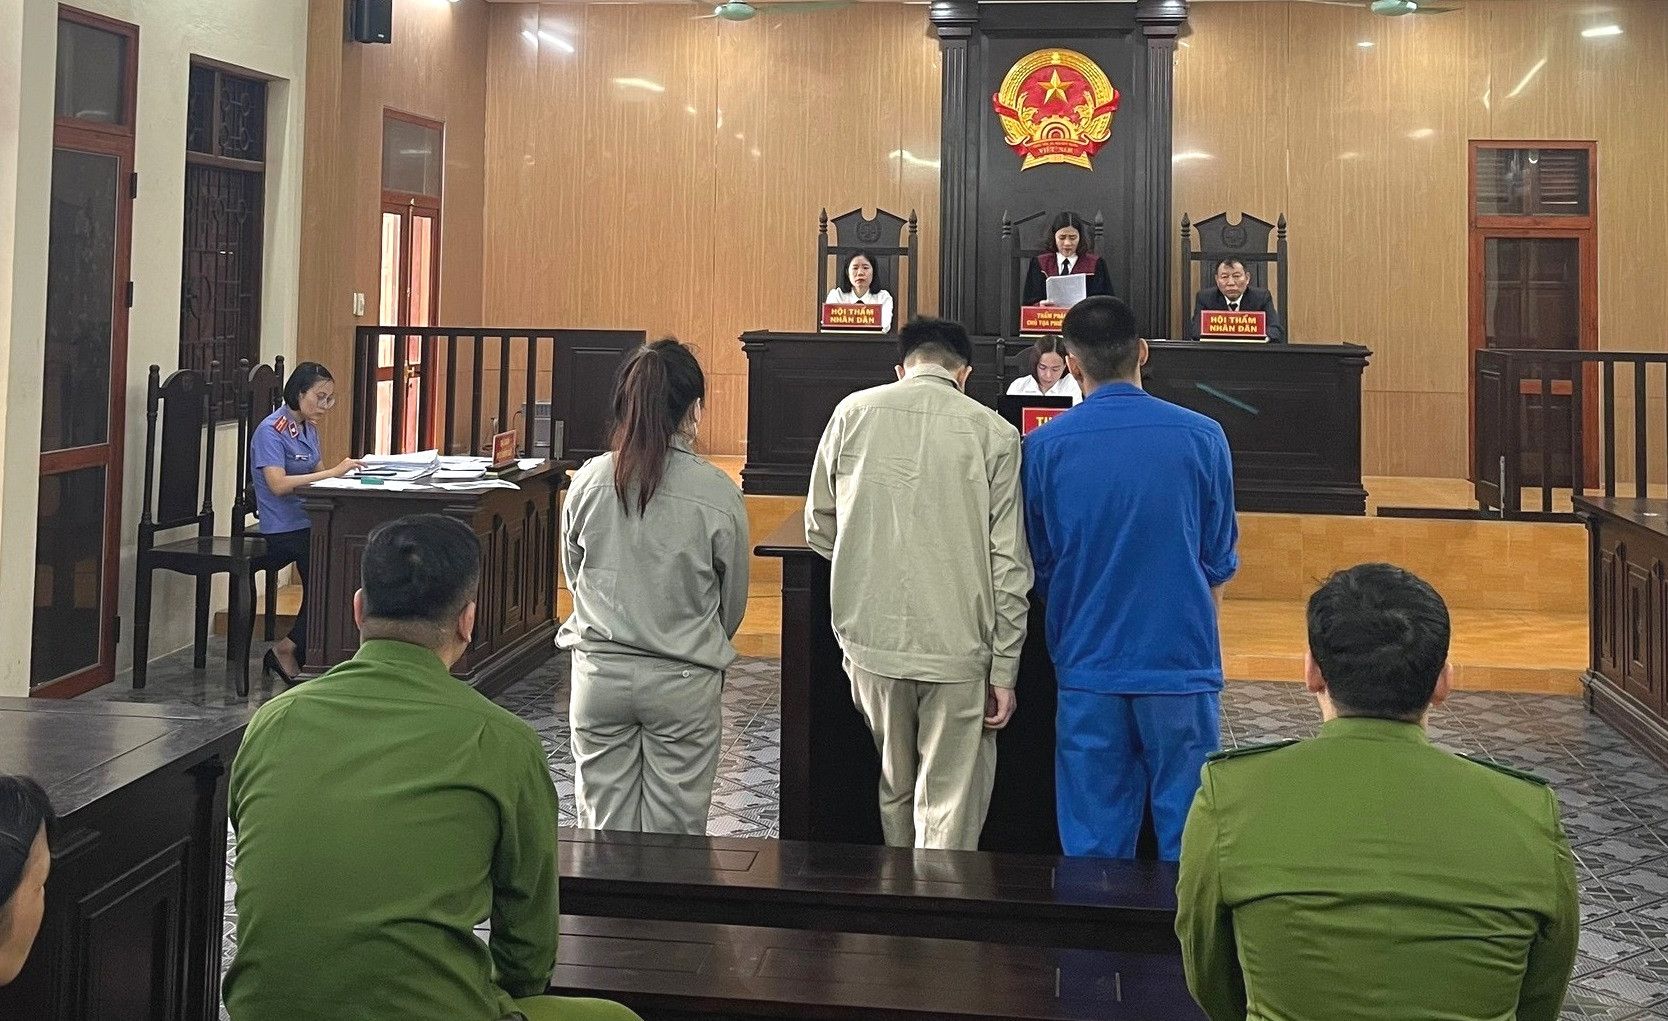 Bán giấy khám sức khỏe giả, người đàn ông Hải Dương bị phạt 27 tháng tù giam - Ảnh 1.